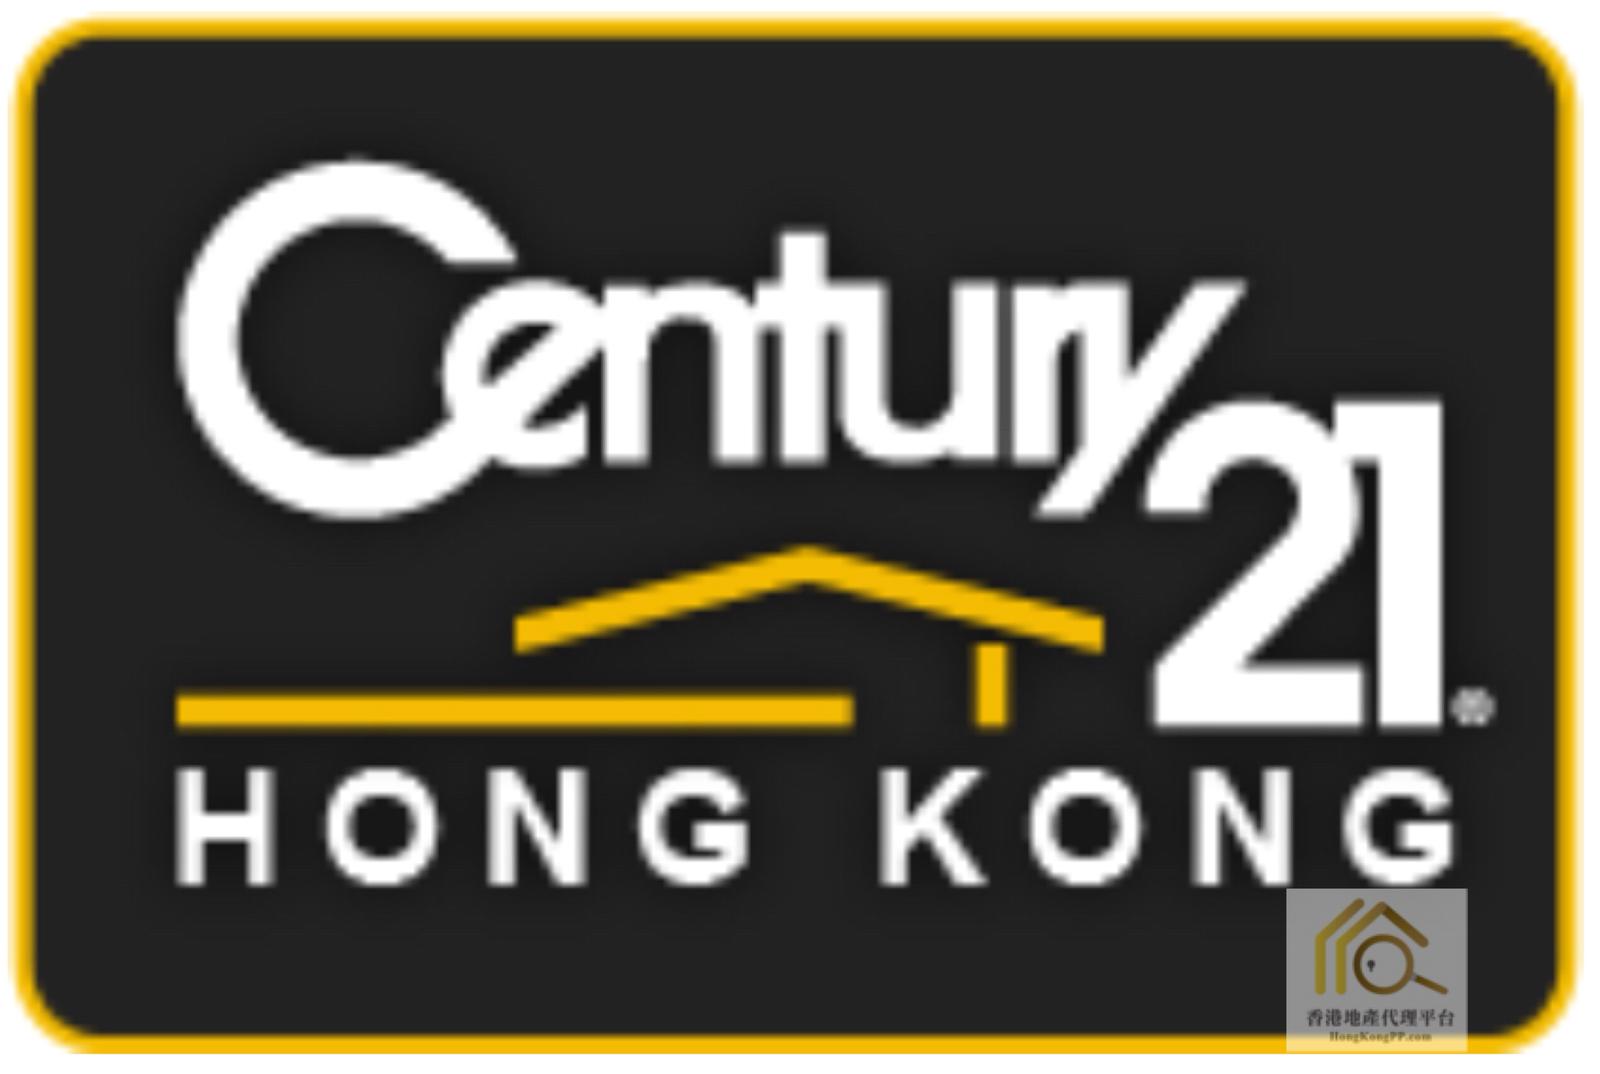 地產代理公司 Estate Agent:  世紀21 世紀21奇豐物業顧問行 (西貢分行)